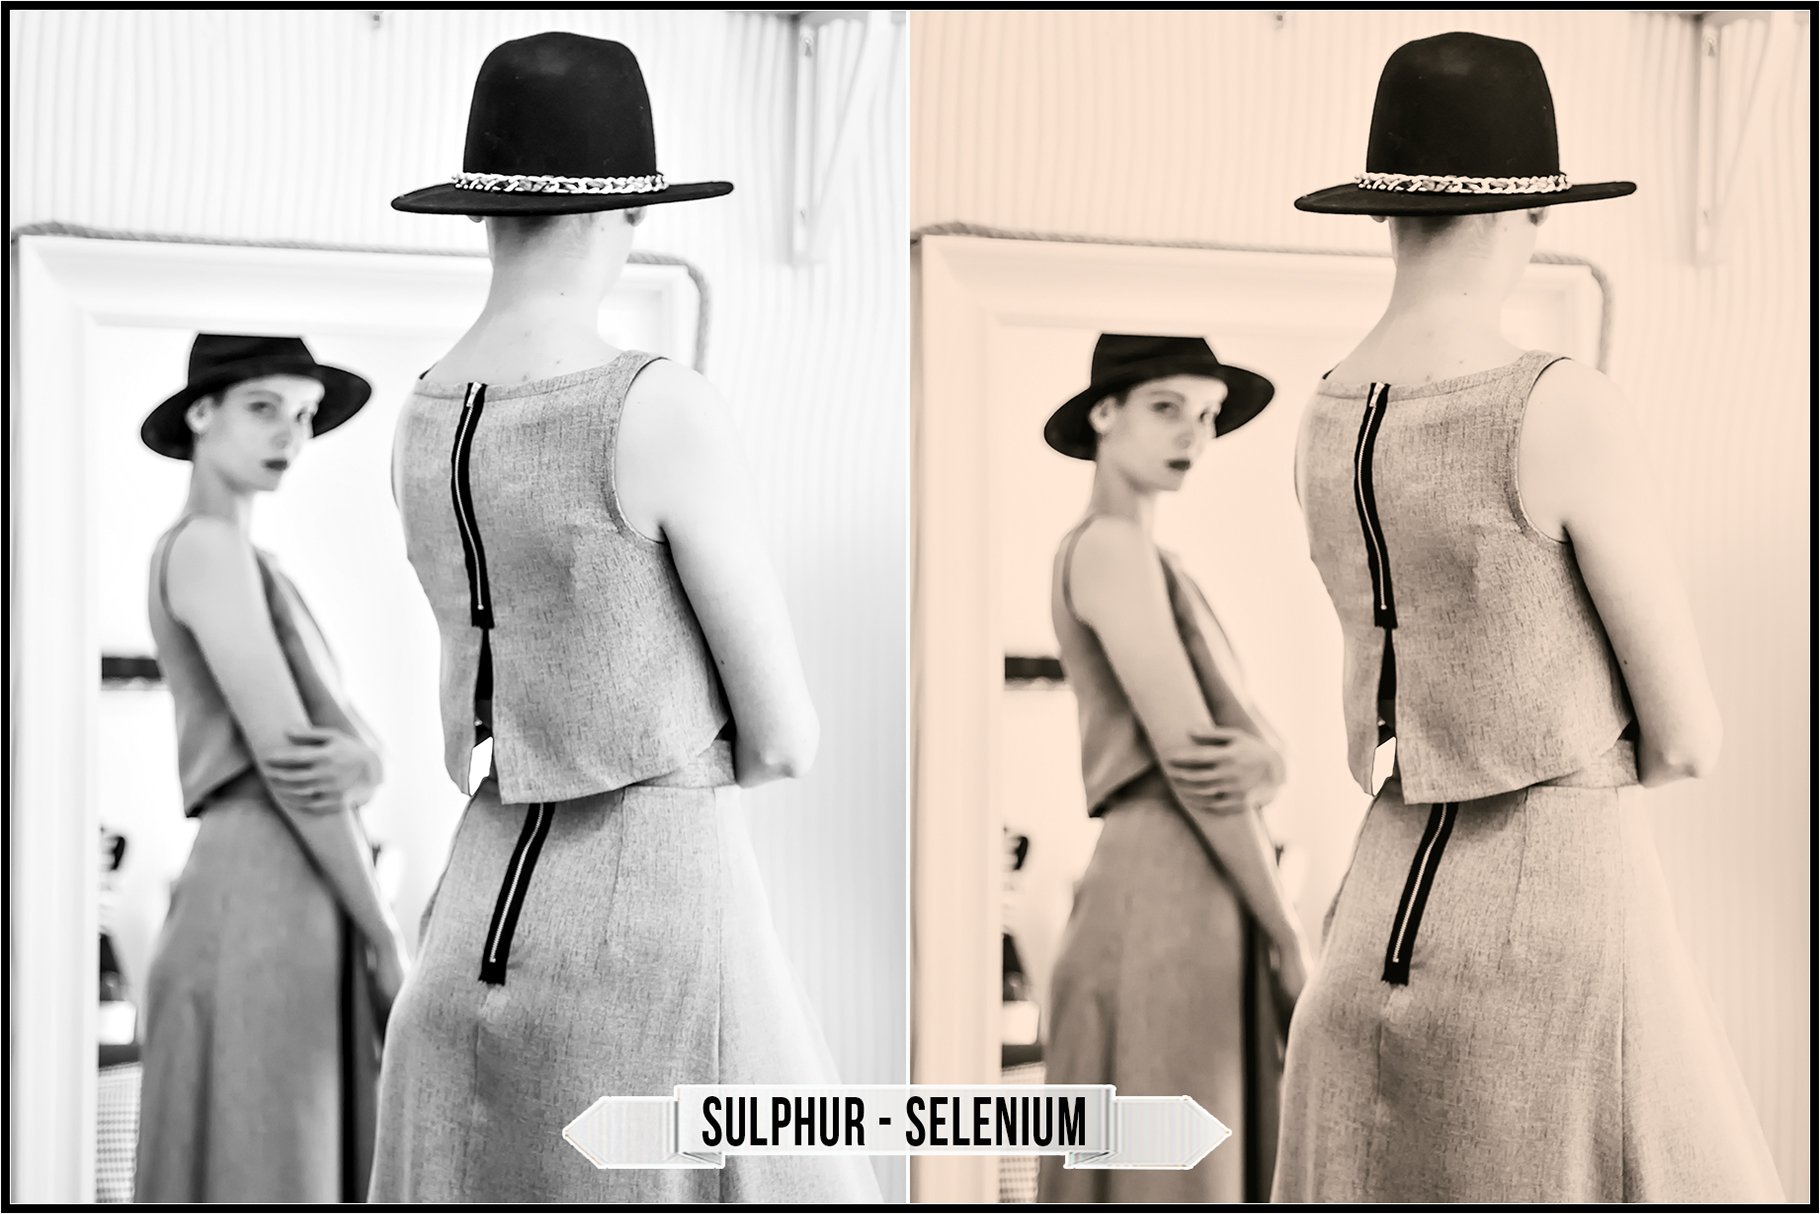 sulphur selenium 710